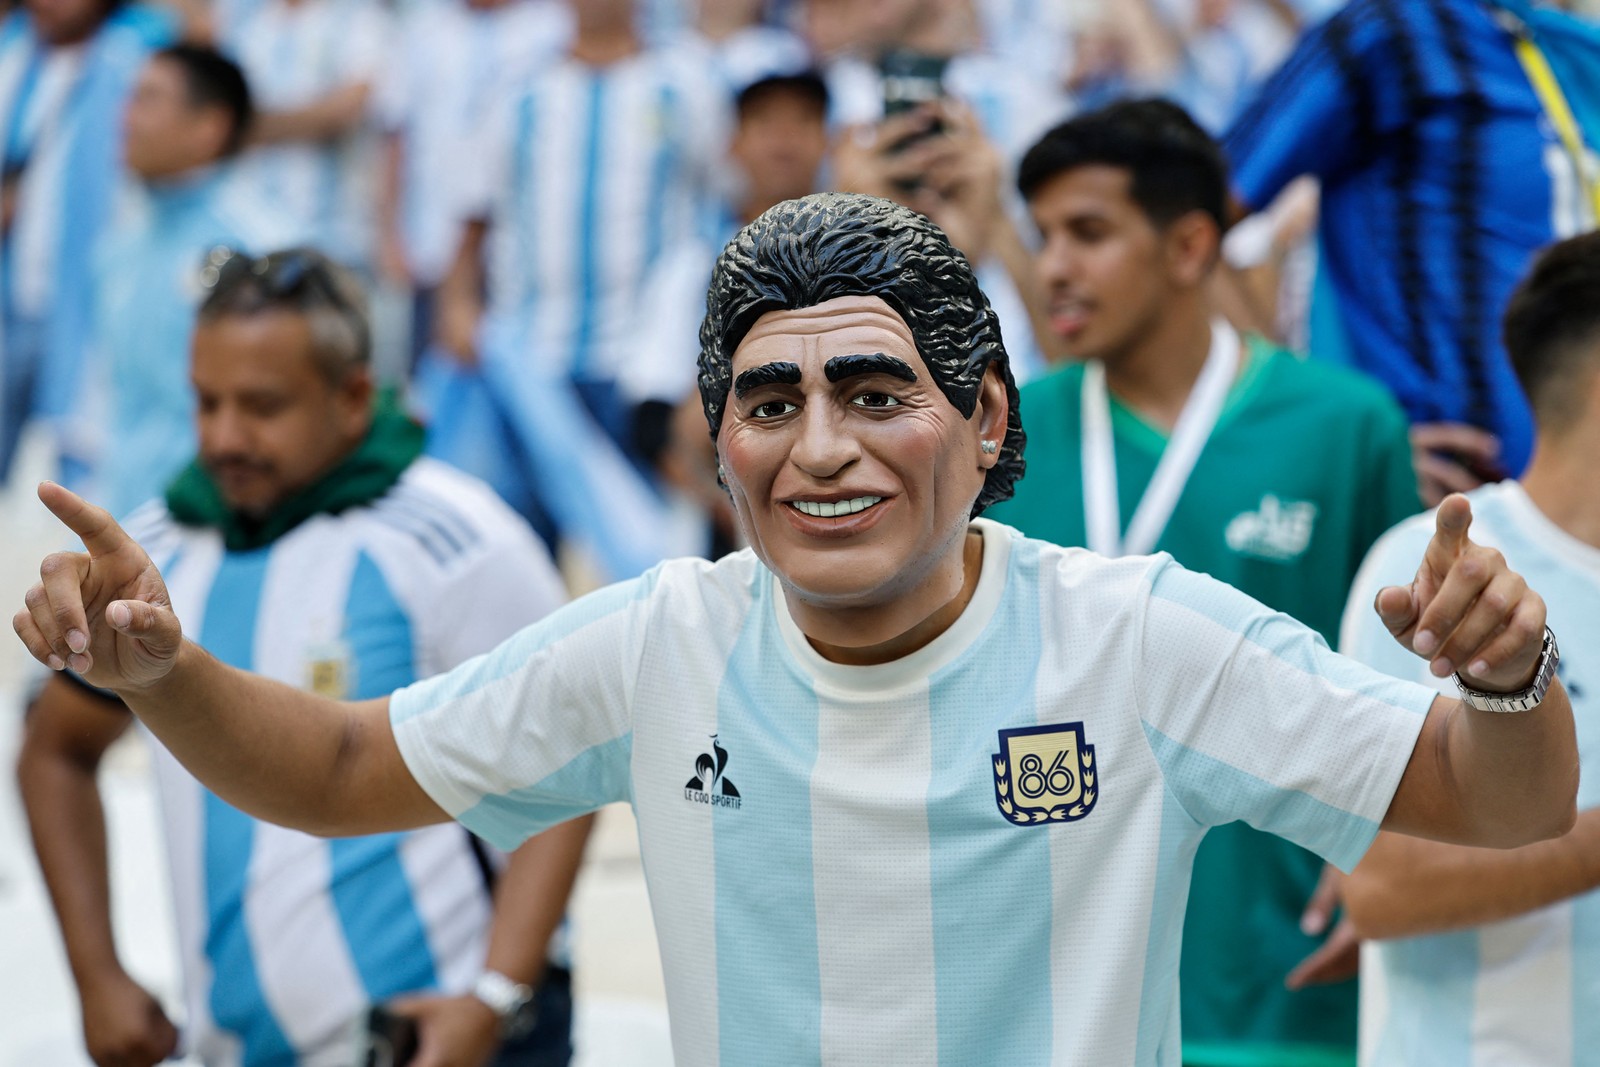 Lenda do futebol mundial, Maradona é homenageado por torcedor Argentina no jogo de estreia — Foto: KHALED DESOUKI/AFP